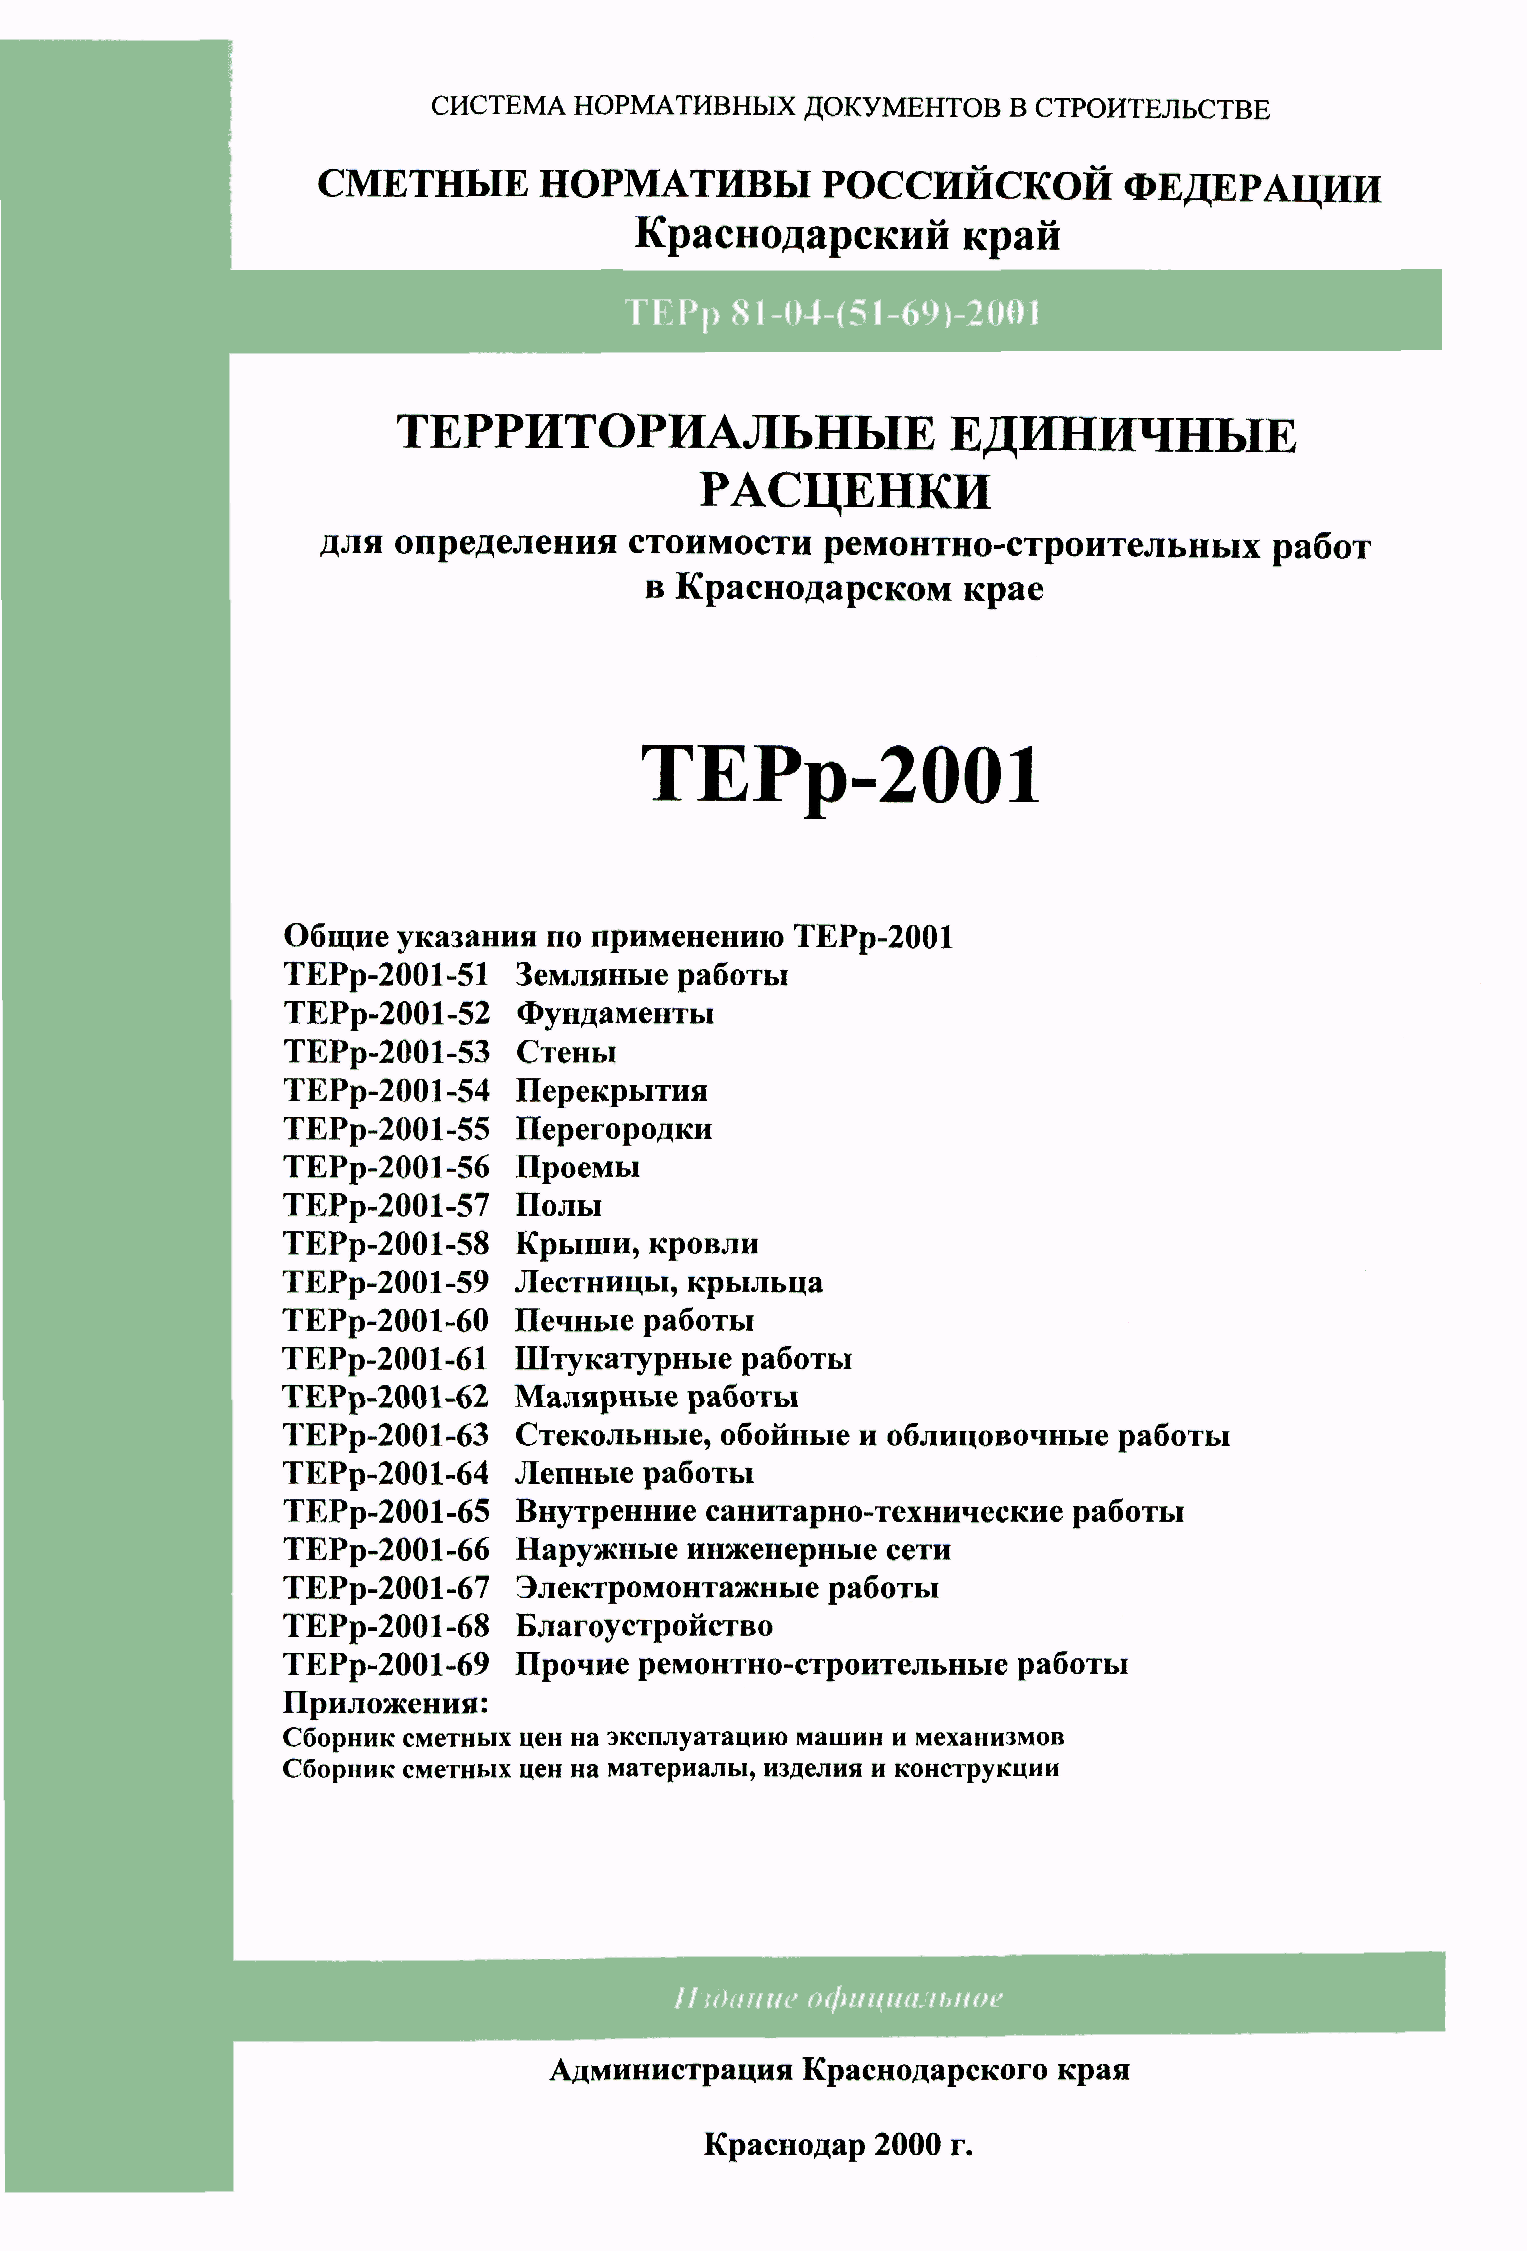 ТЕРр Краснодарского края 2001-52